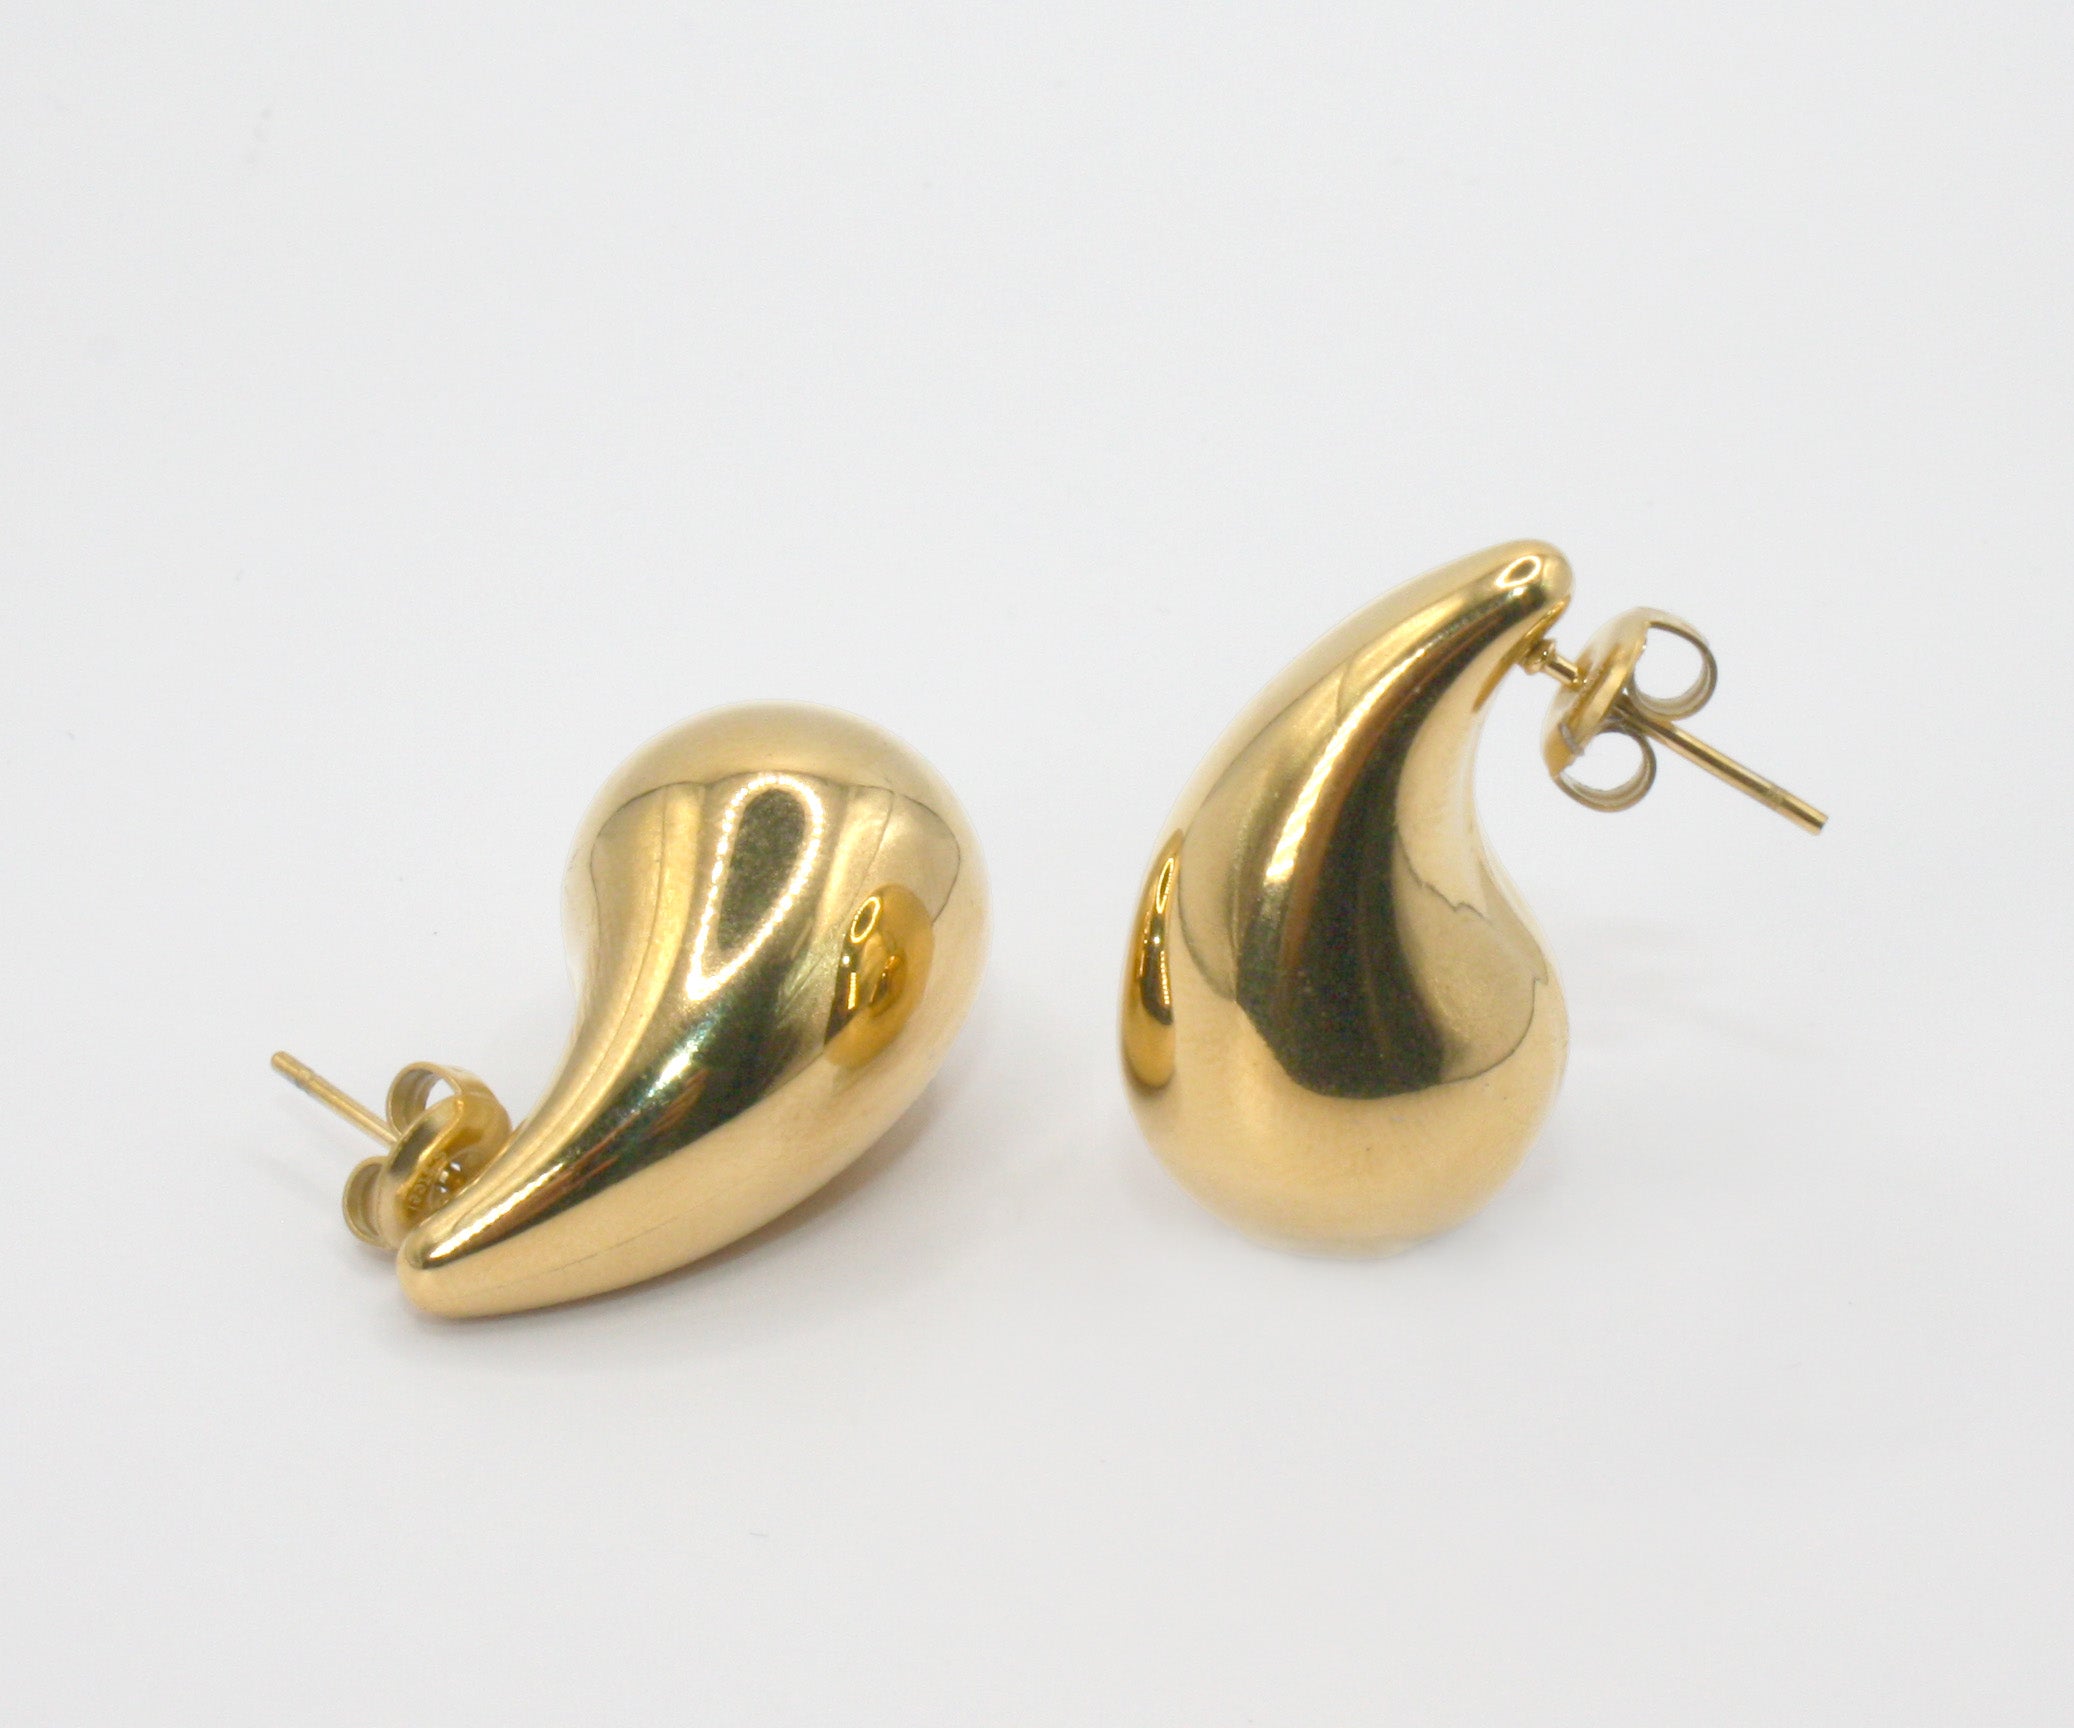 Colección Bold gold | Pendientes Medium Drop de acero inoxidable bañados en oro 14k. Marca Vesiica.